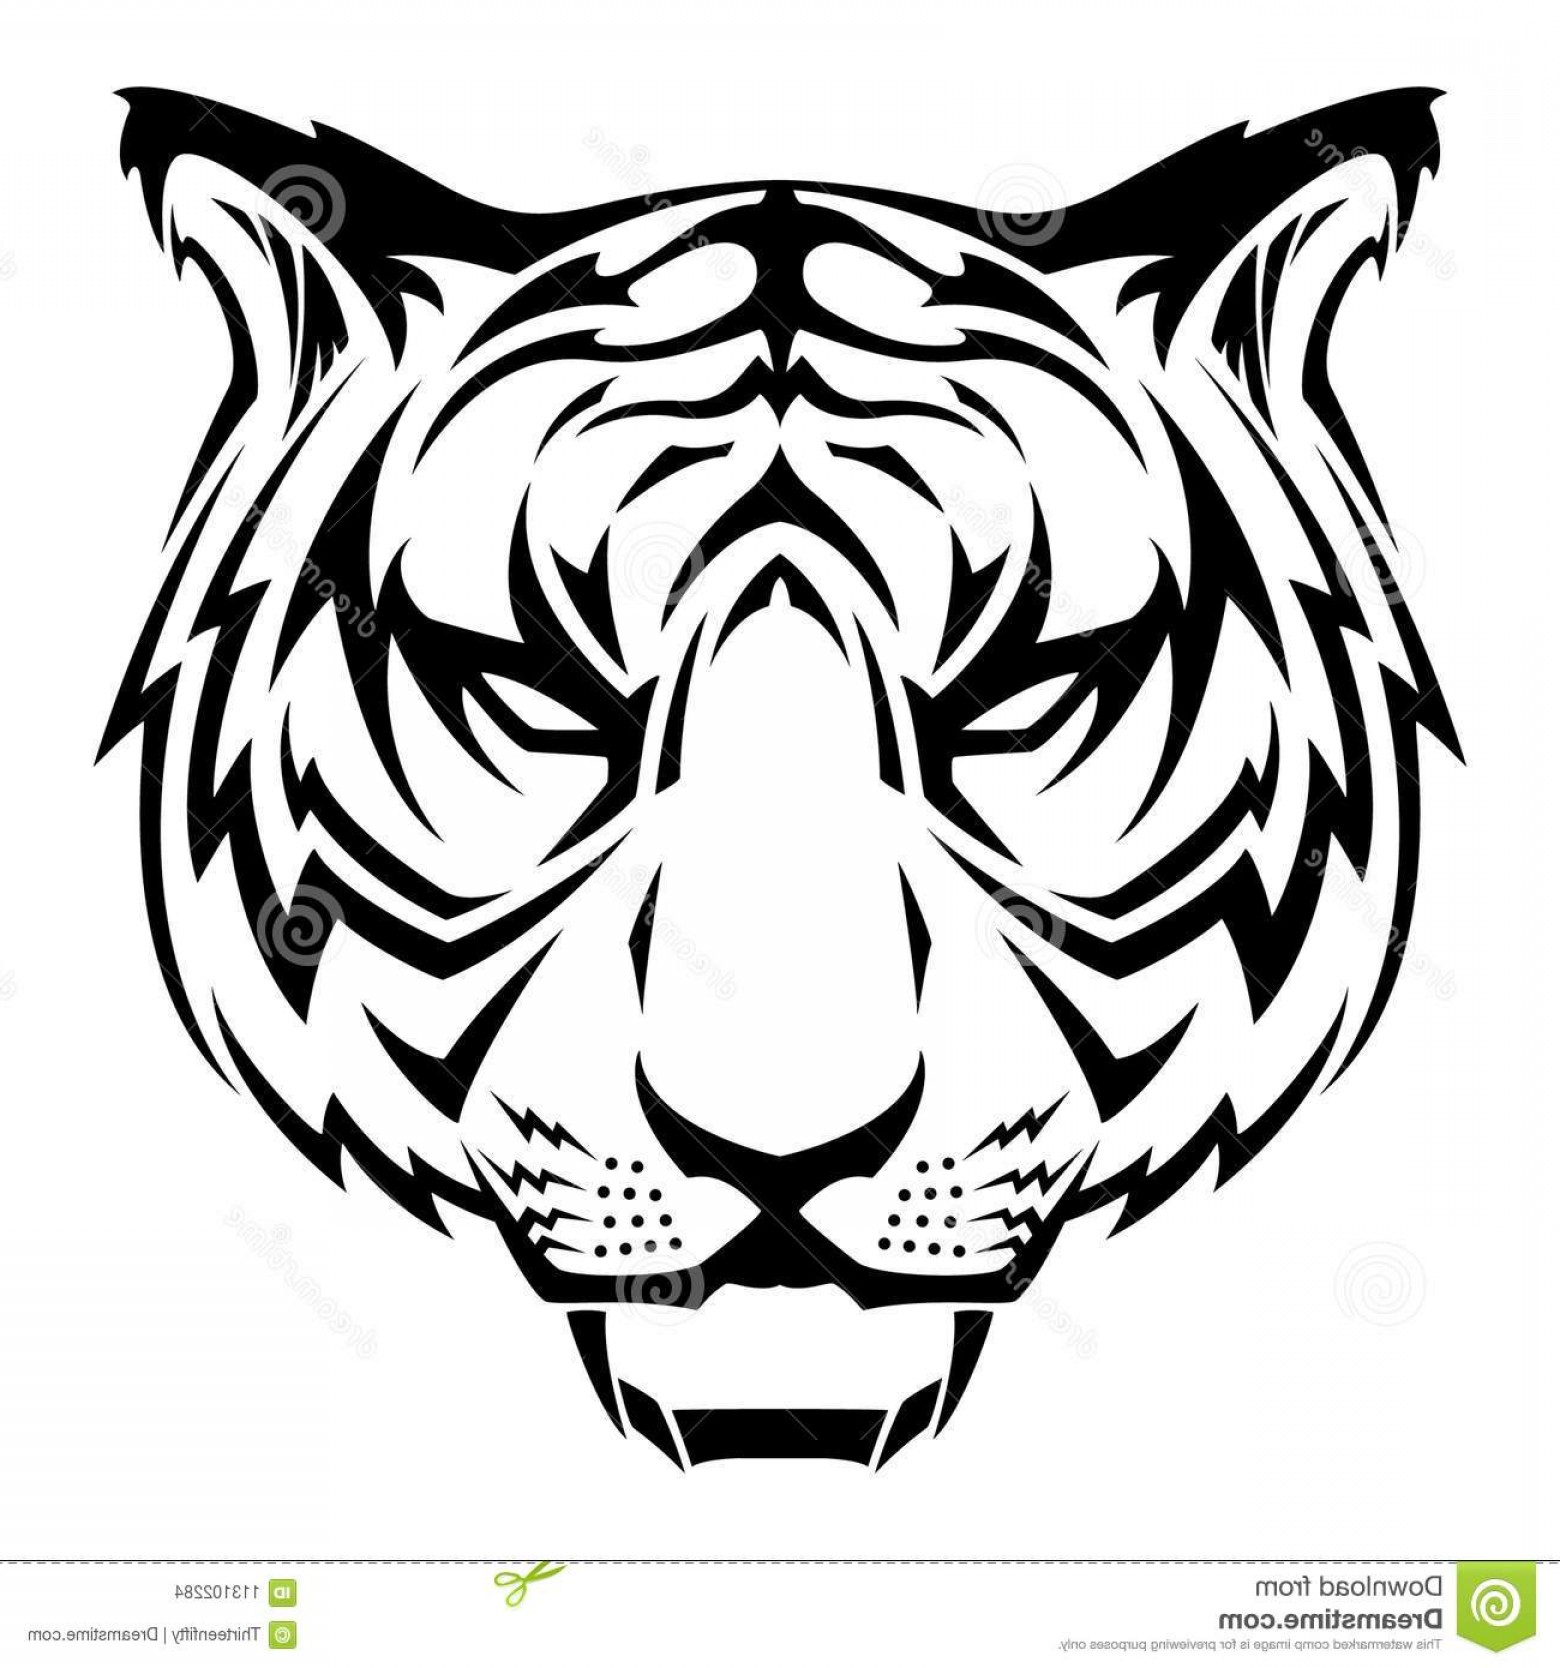 Рисунки в формате jpg. Тату тигра трайбл. Трайбл голова тигра. Морда тигра трафарет. Стилизованная голова тигра.